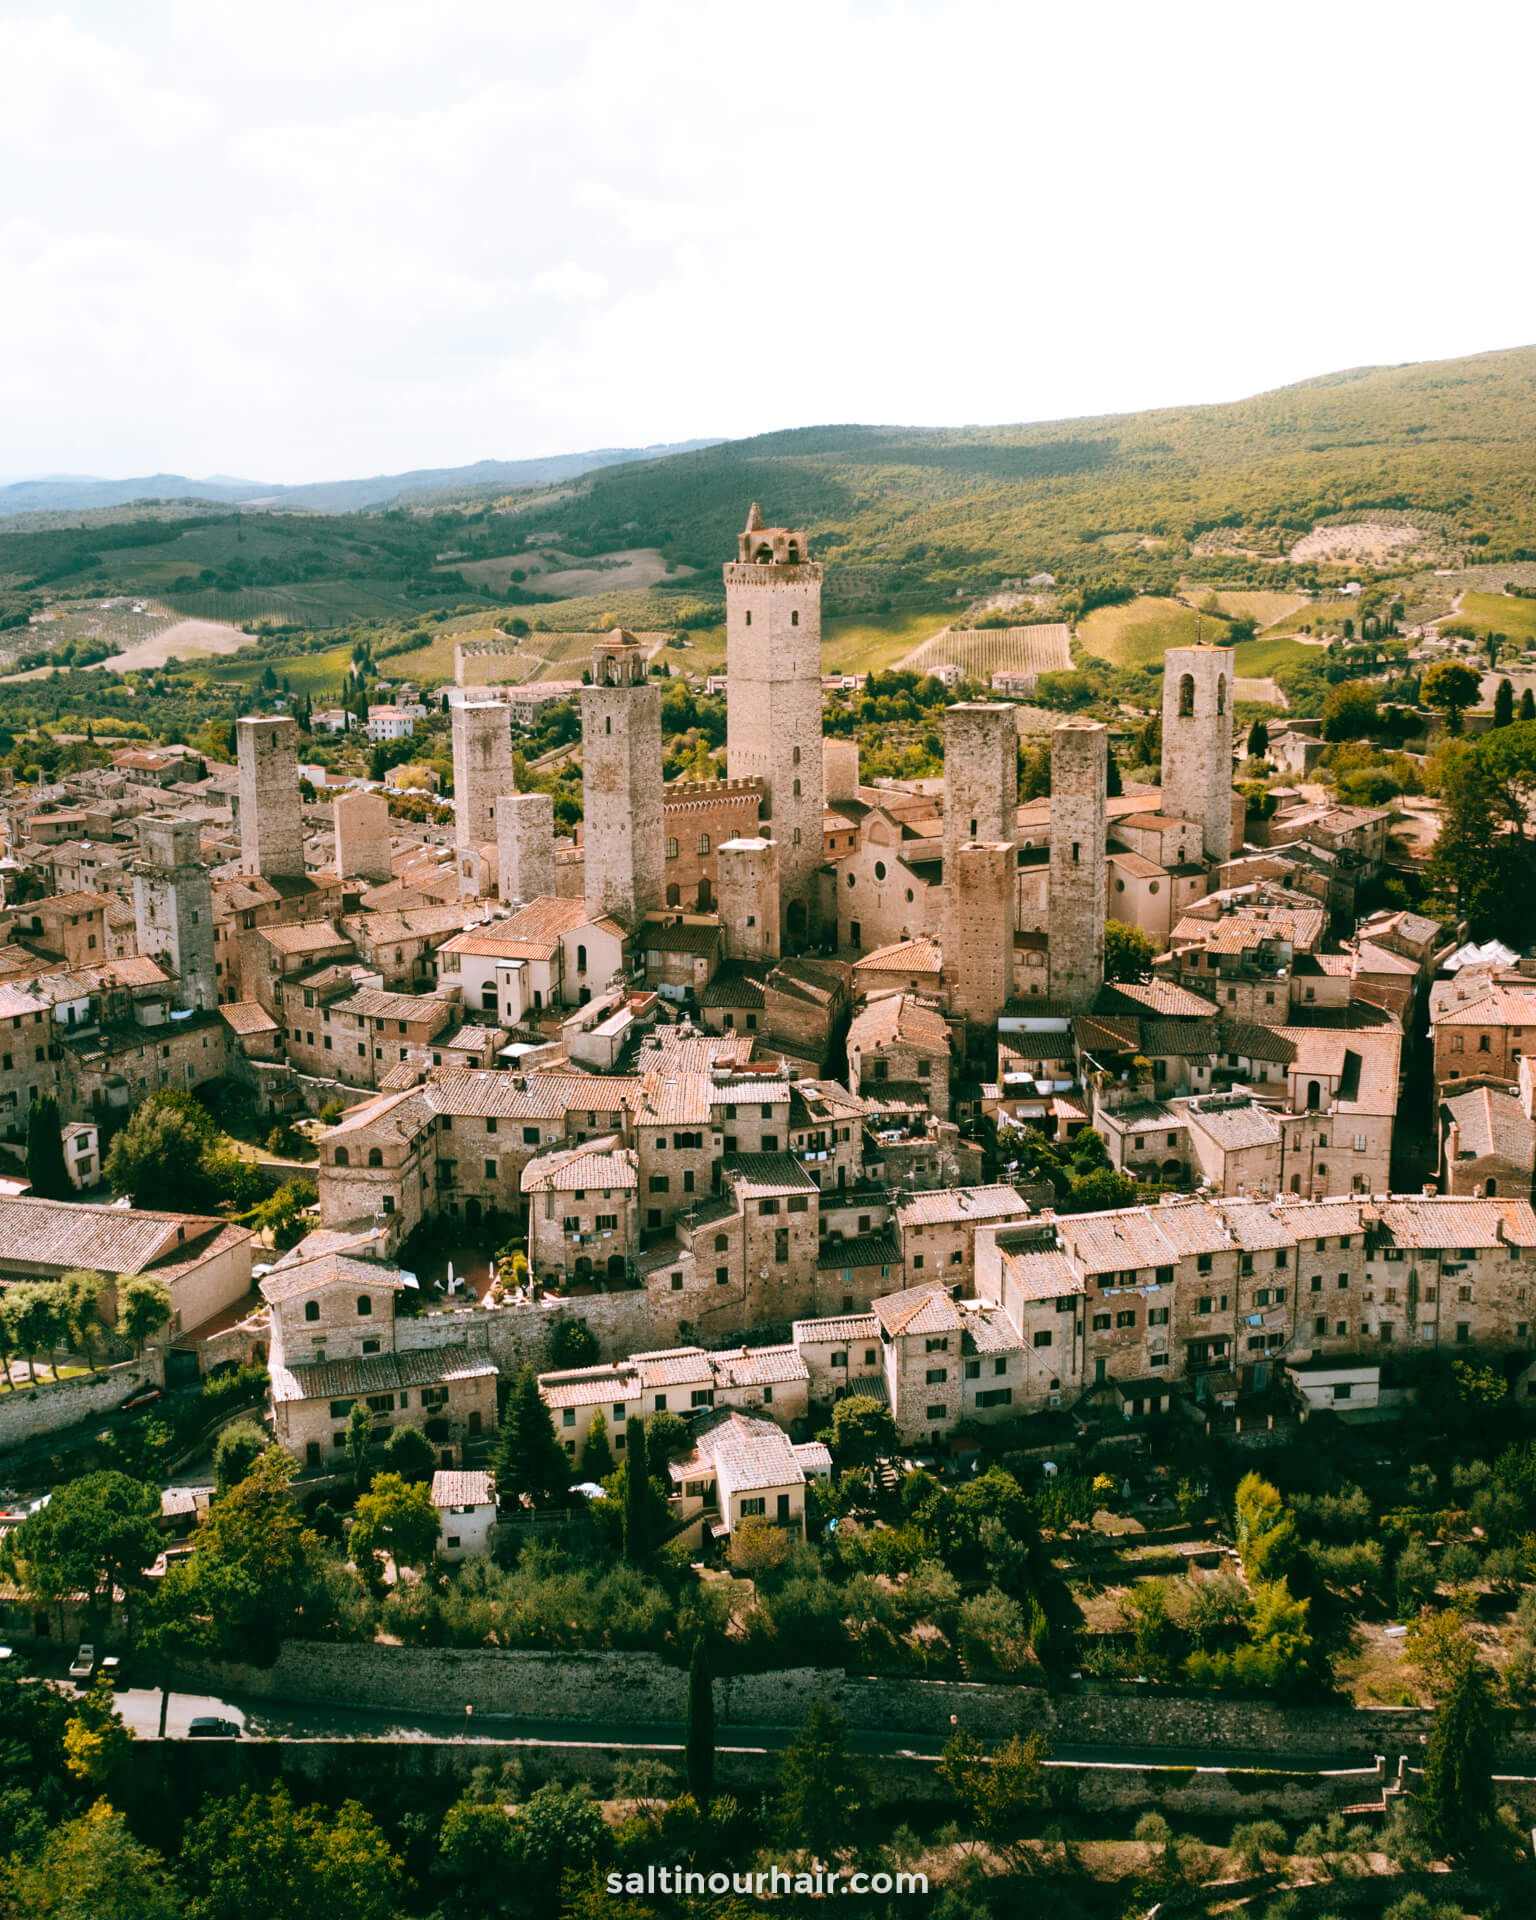  San Gimignano beautiful places tuscany italy